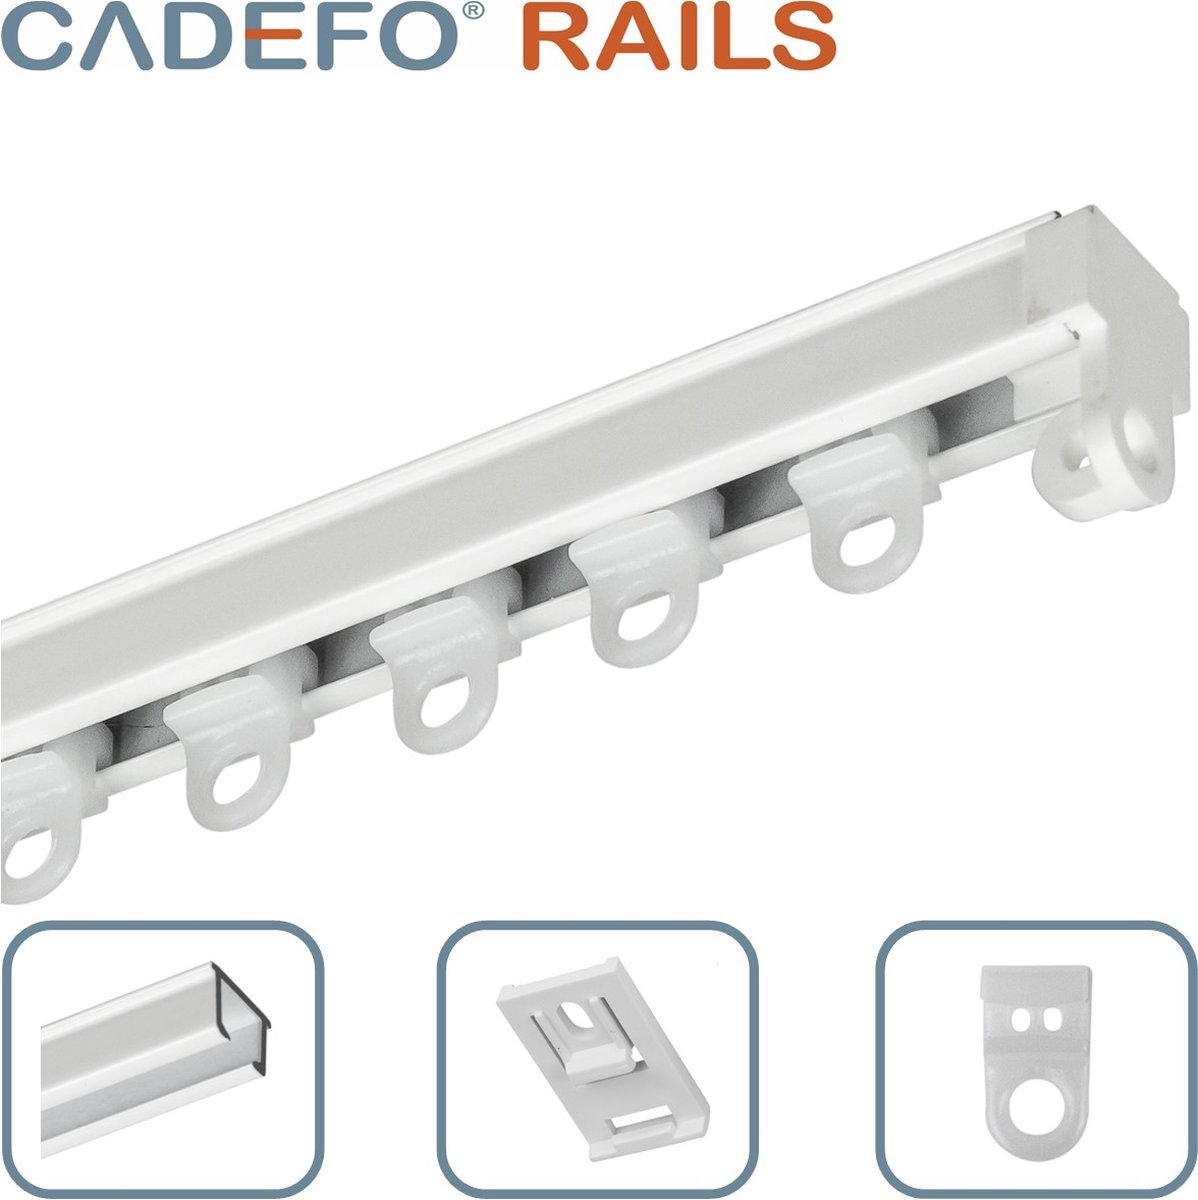 CADEFO RAILS (101 - 150 cm) Gordijnrails - Compleet op maat! - UIT 1 STUK - Leverbaar tot 6 meter - Plafondbevestiging - Lengte 122 cm